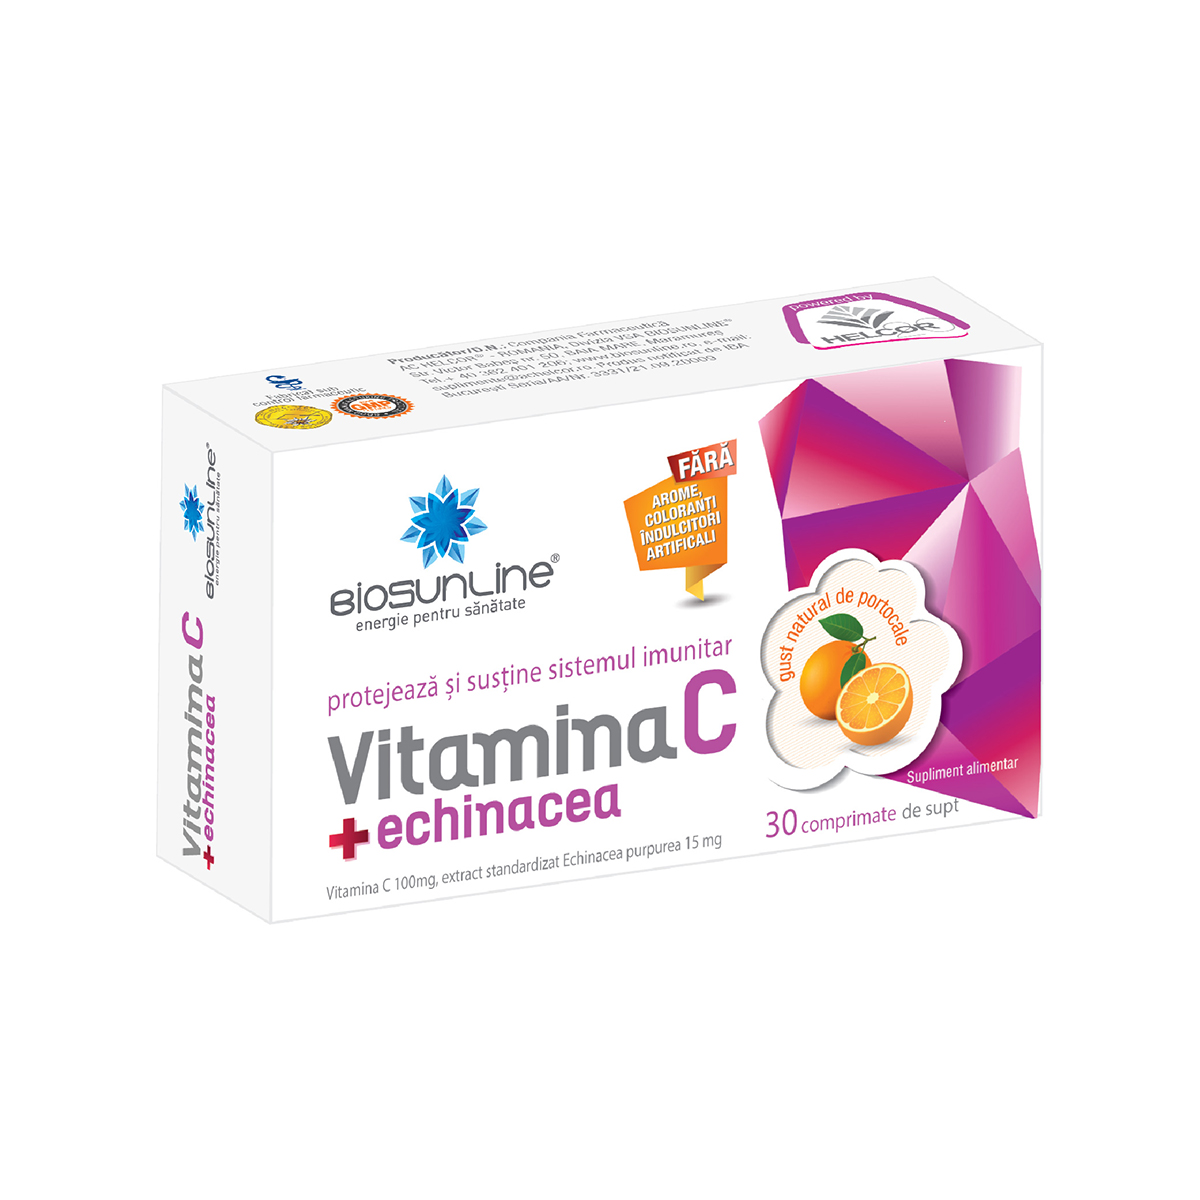 Vitamina C + echinacea, 30 comprimate de supt, BioSunLine